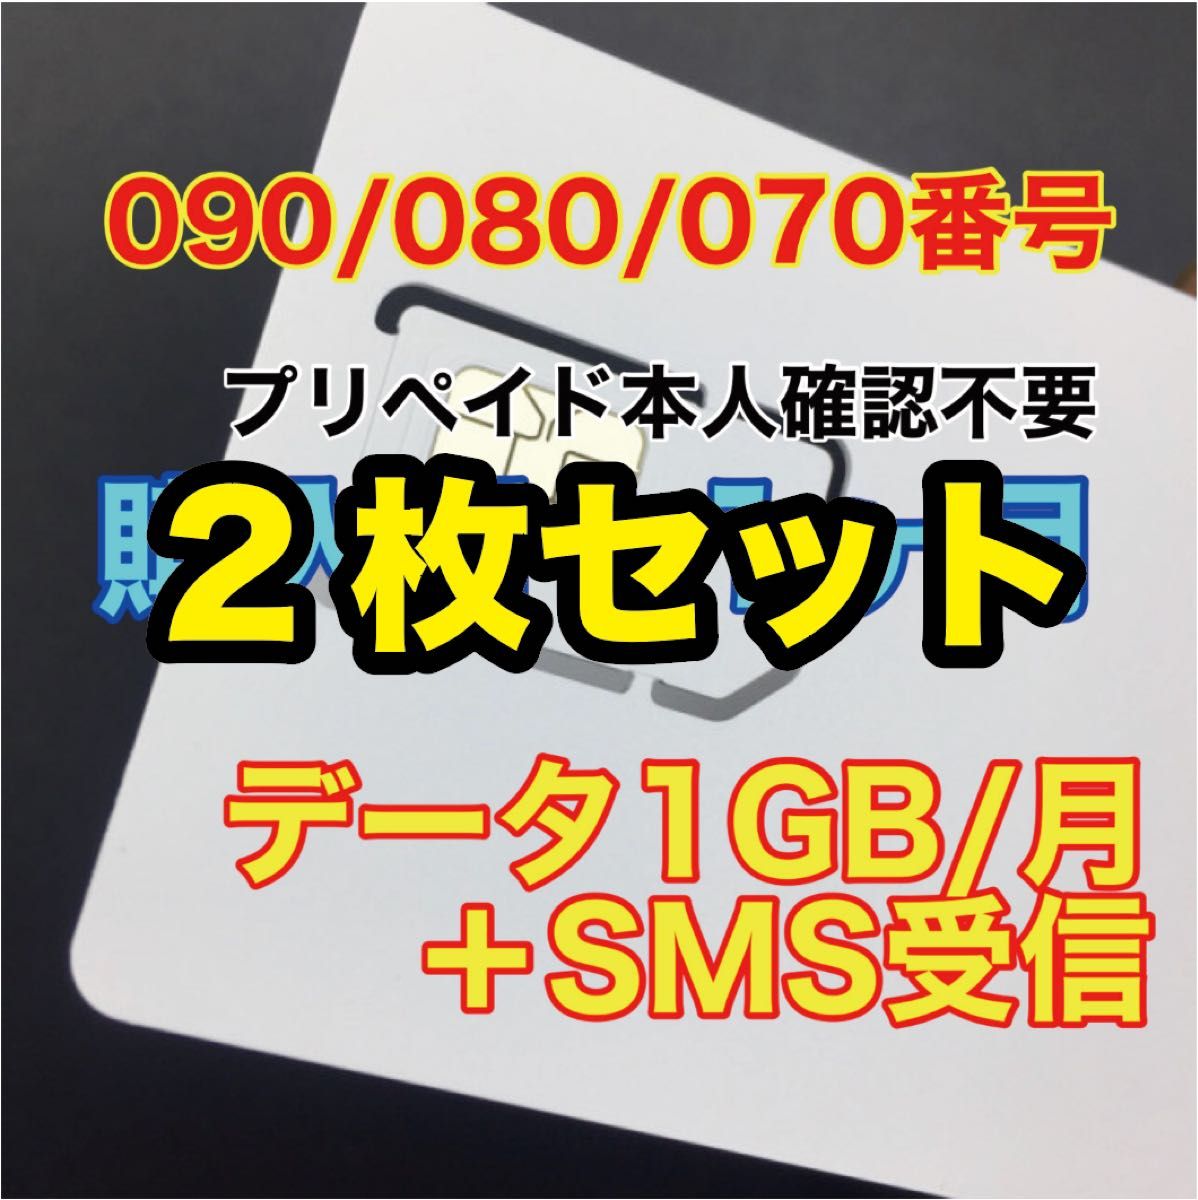 2枚セット　プリペイドSIM　データ通信1GB/月　SMS受信　090/080/070